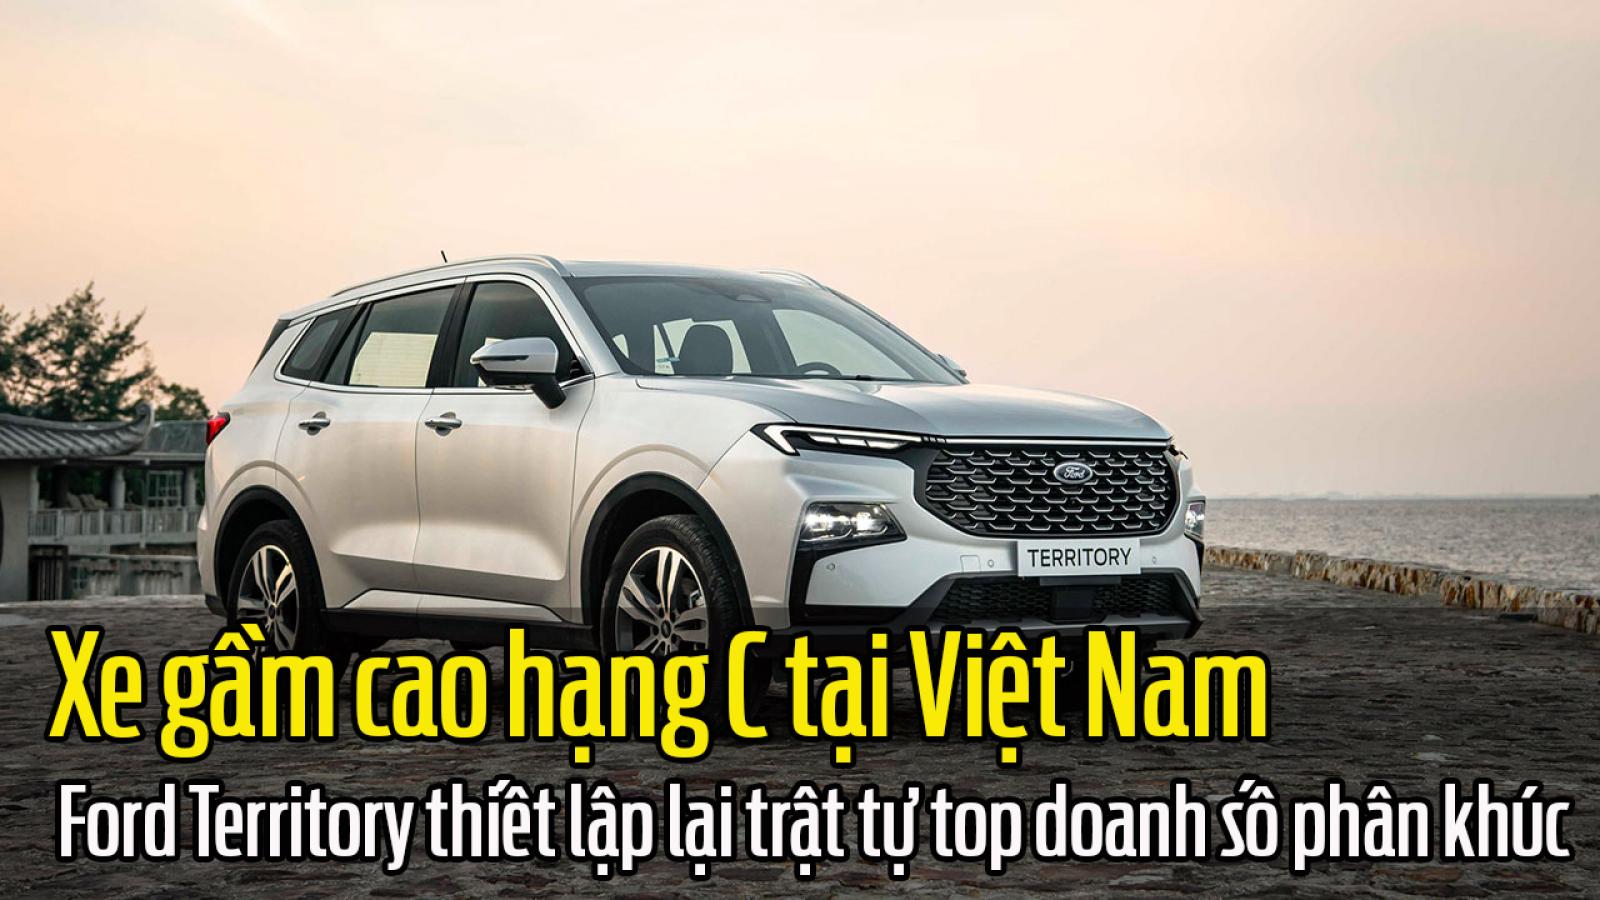 Xe gầm cao hạng C tại Việt Nam: Ford Territory thiết lập lại trật tự top doanh số phân khúc